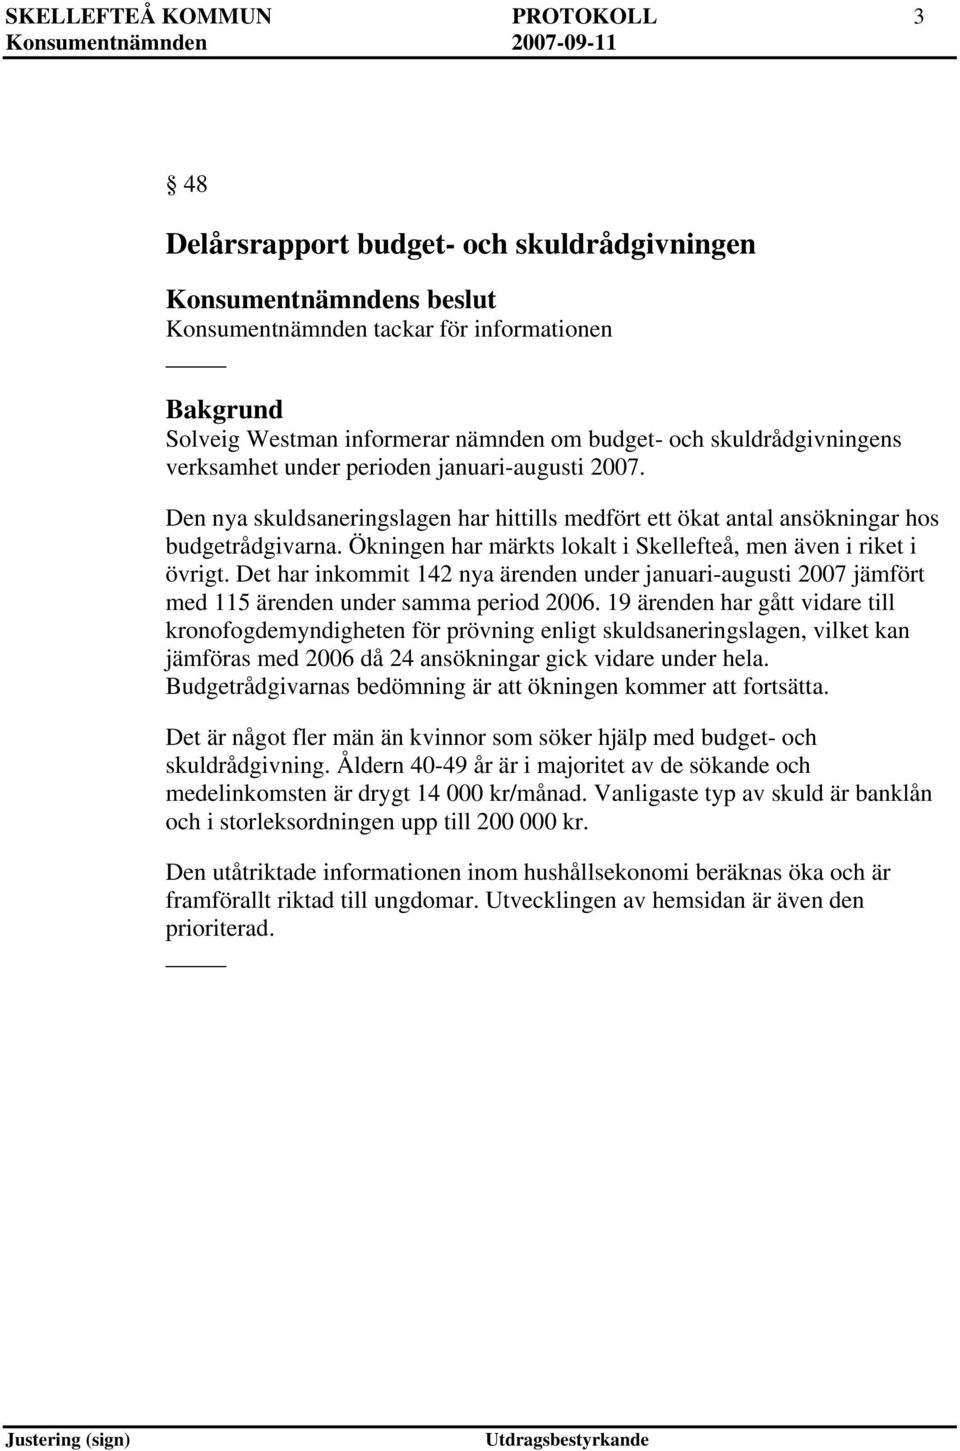 Ökningen har märkts lokalt i Skellefteå, men även i riket i övrigt. Det har inkommit 142 nya ärenden under januari-augusti 2007 jämfört med 115 ärenden under samma period 2006.